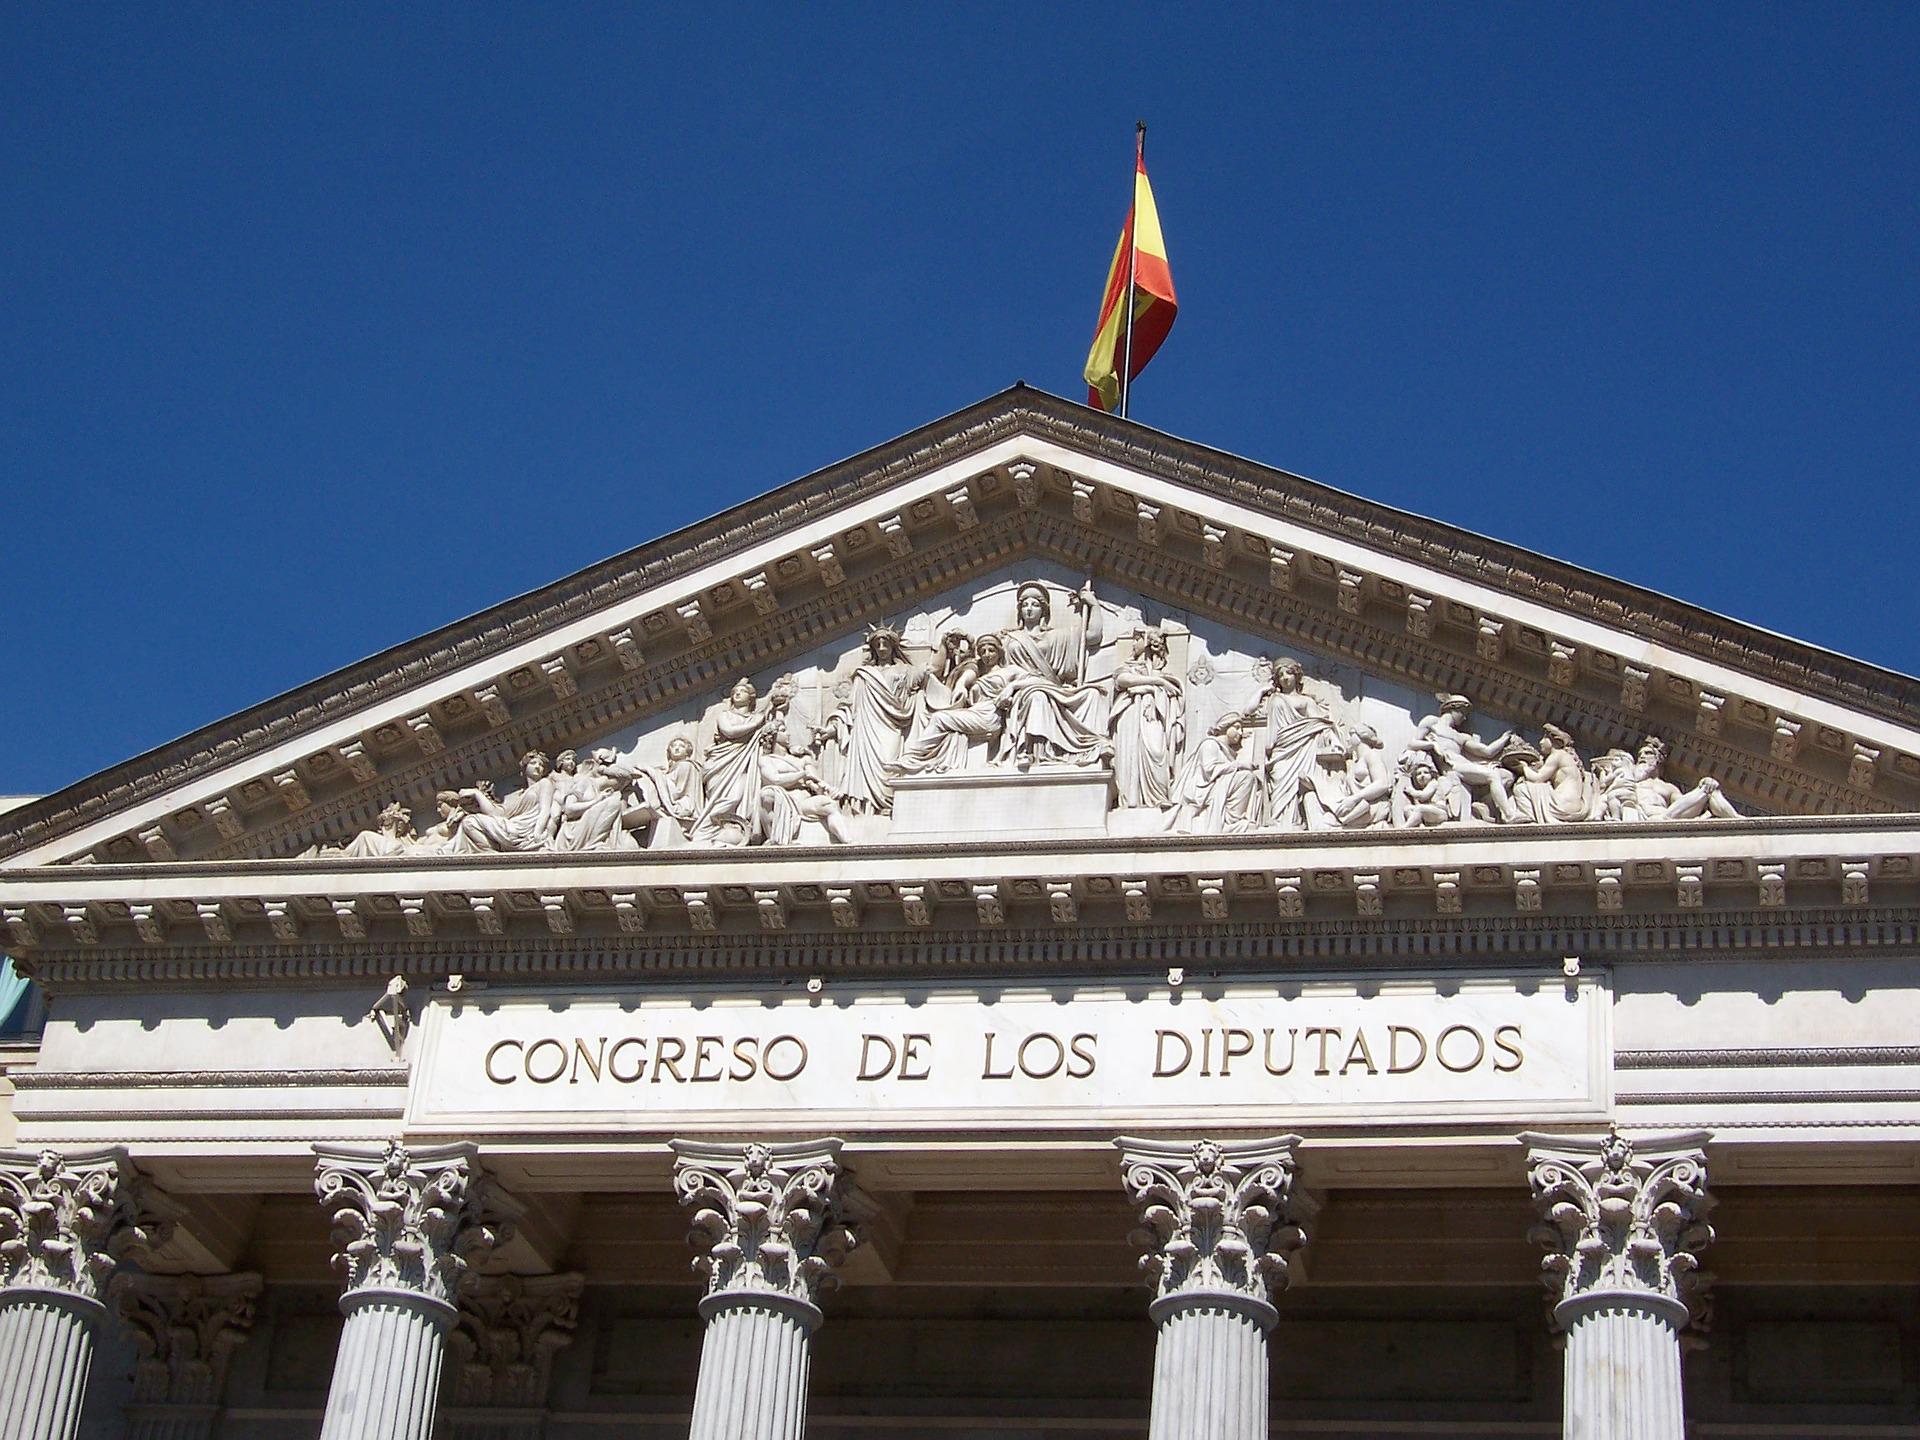 Fotografía de la fachada del Congreso de los Diputados. -Pixabay